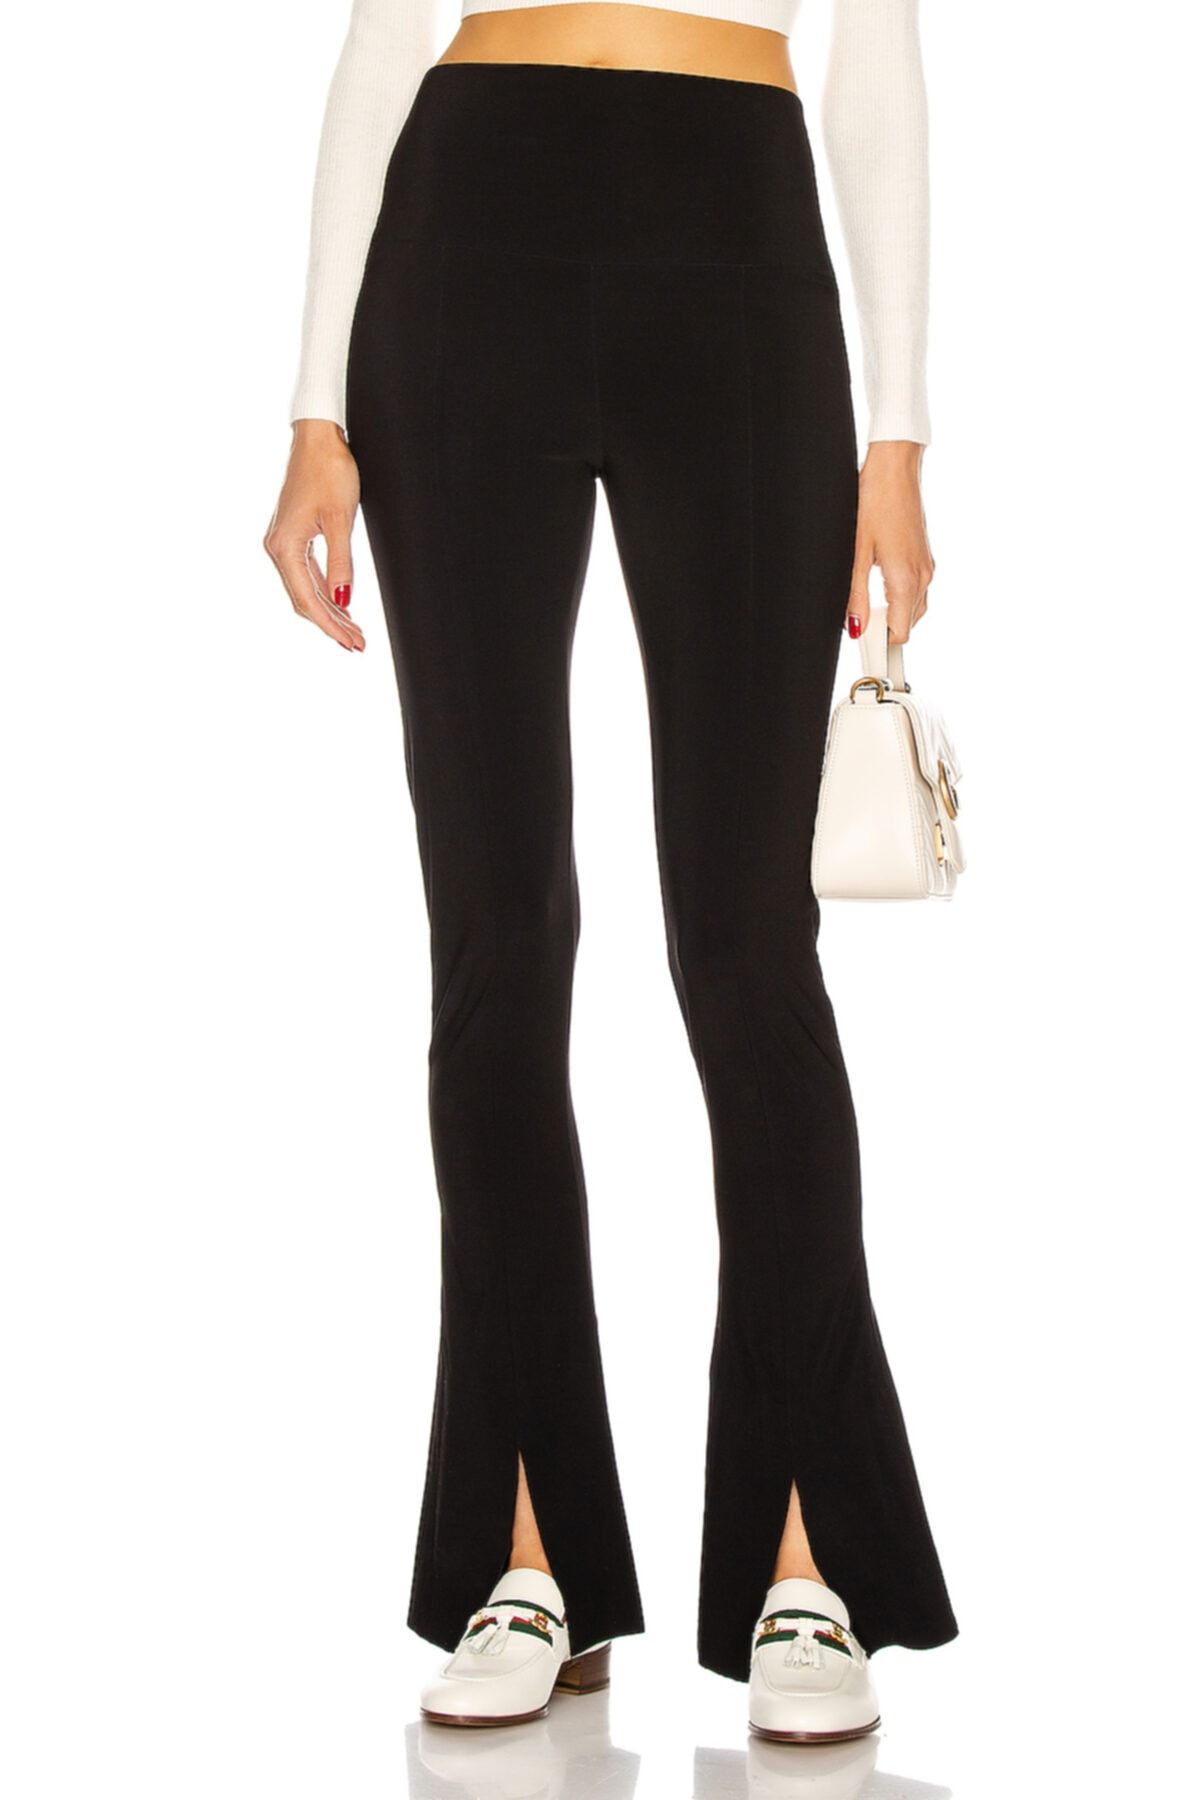 By Umut Design Kadın Siyah Yırtmaçlı Yüksek Bel Pantolon